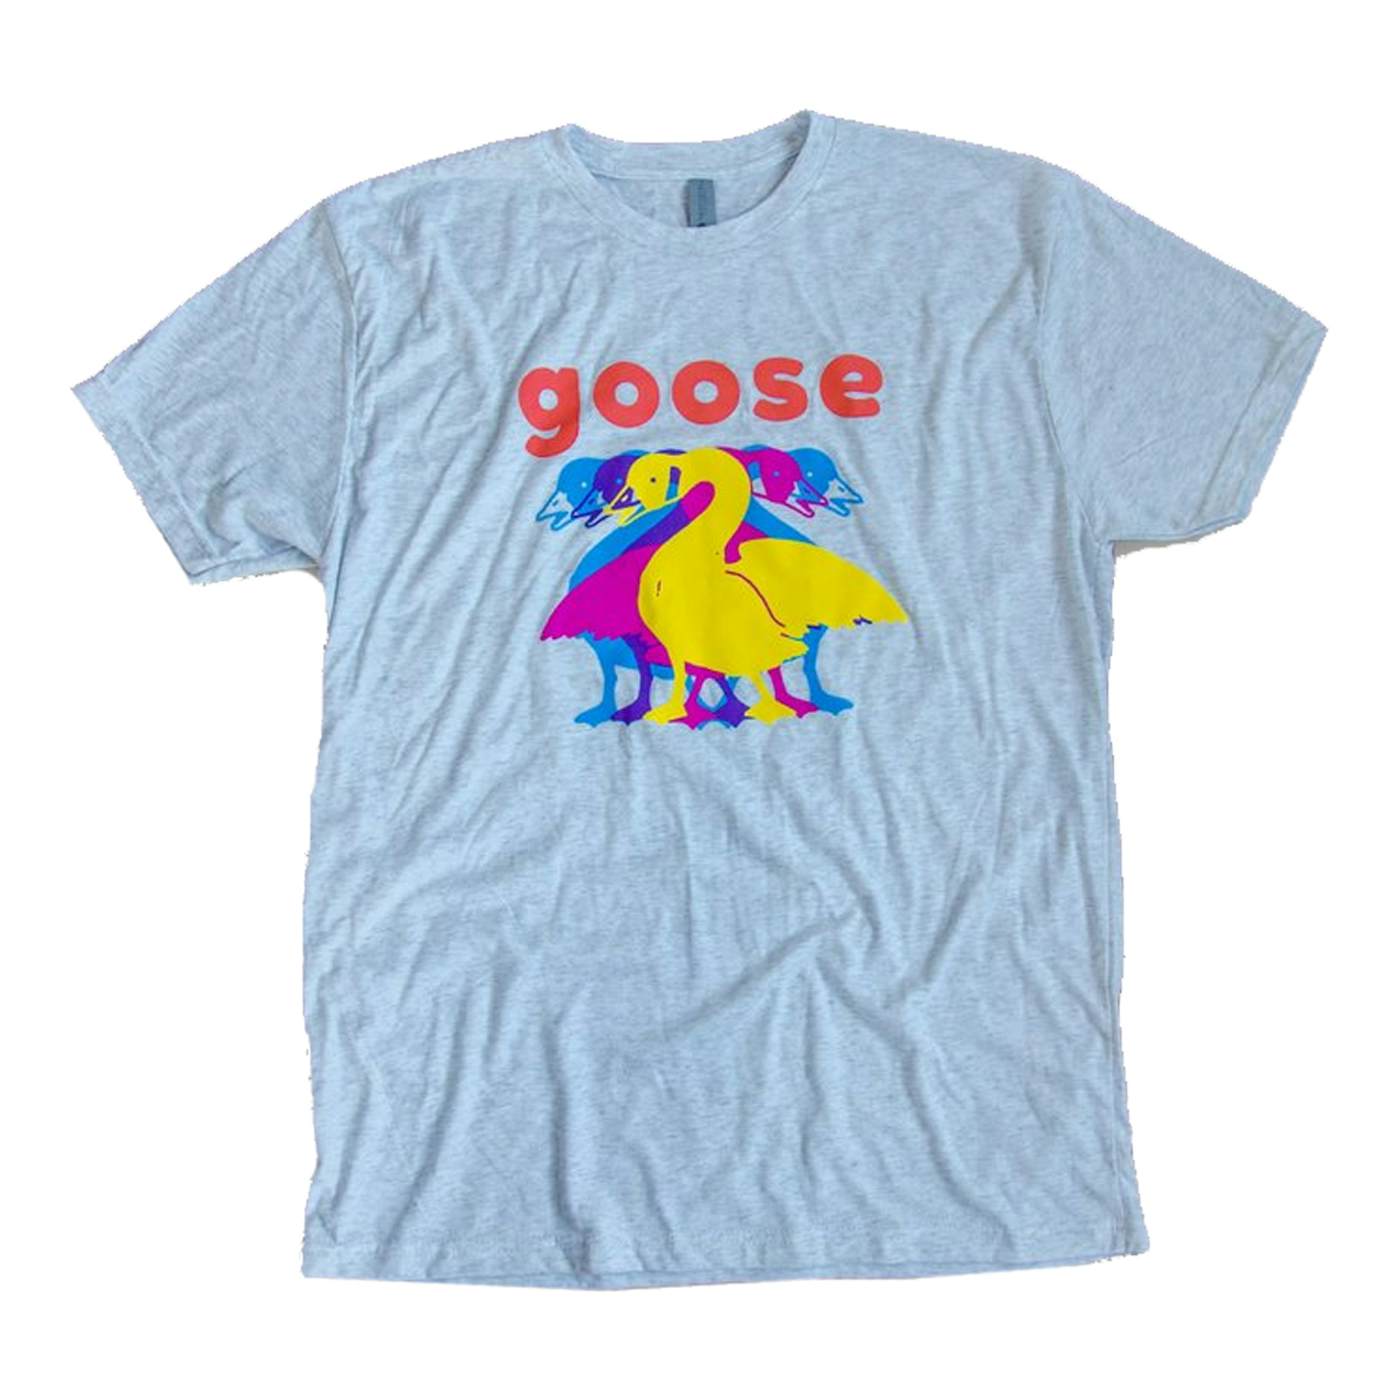 Goose "5" T-shirt - Heather Grey